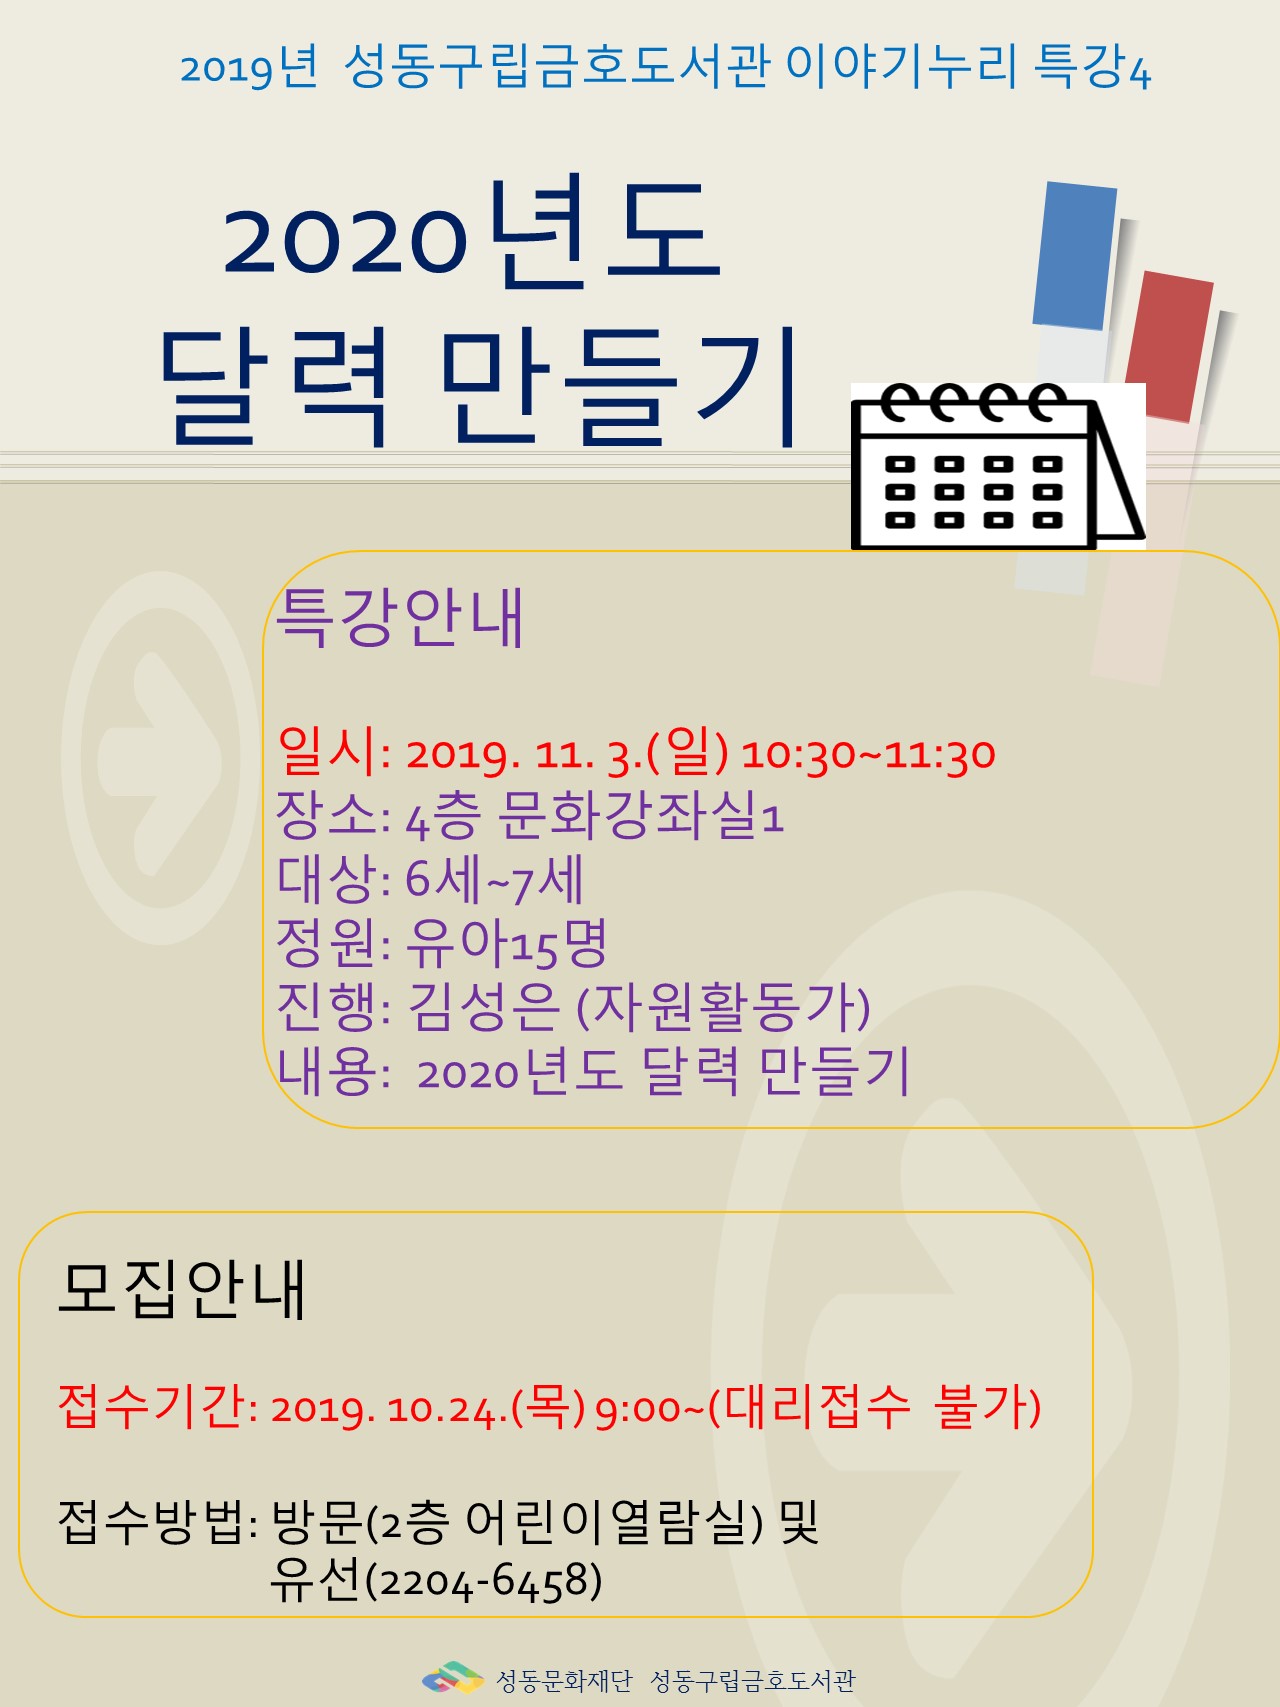 [서울] [성동구립금호도서관] 2019년 성동구립금호도서관 이야기누리 4차특강 2020년도 달력 만들기